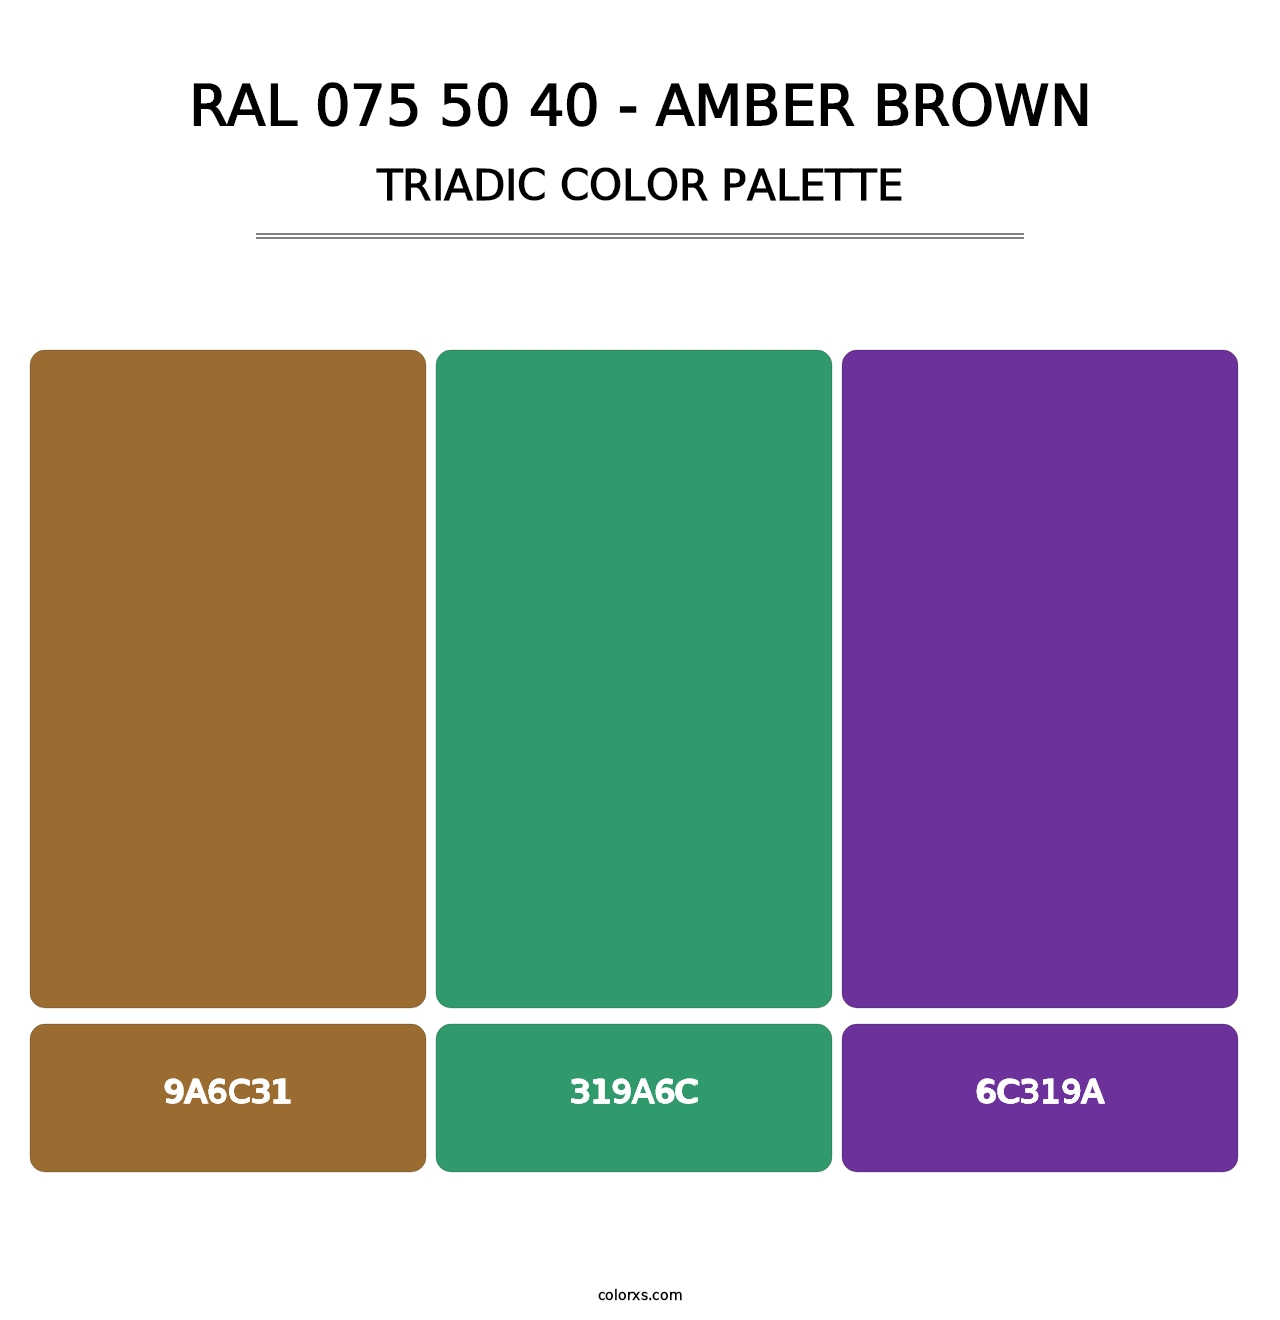 RAL 075 50 40 - Amber Brown - Triadic Color Palette